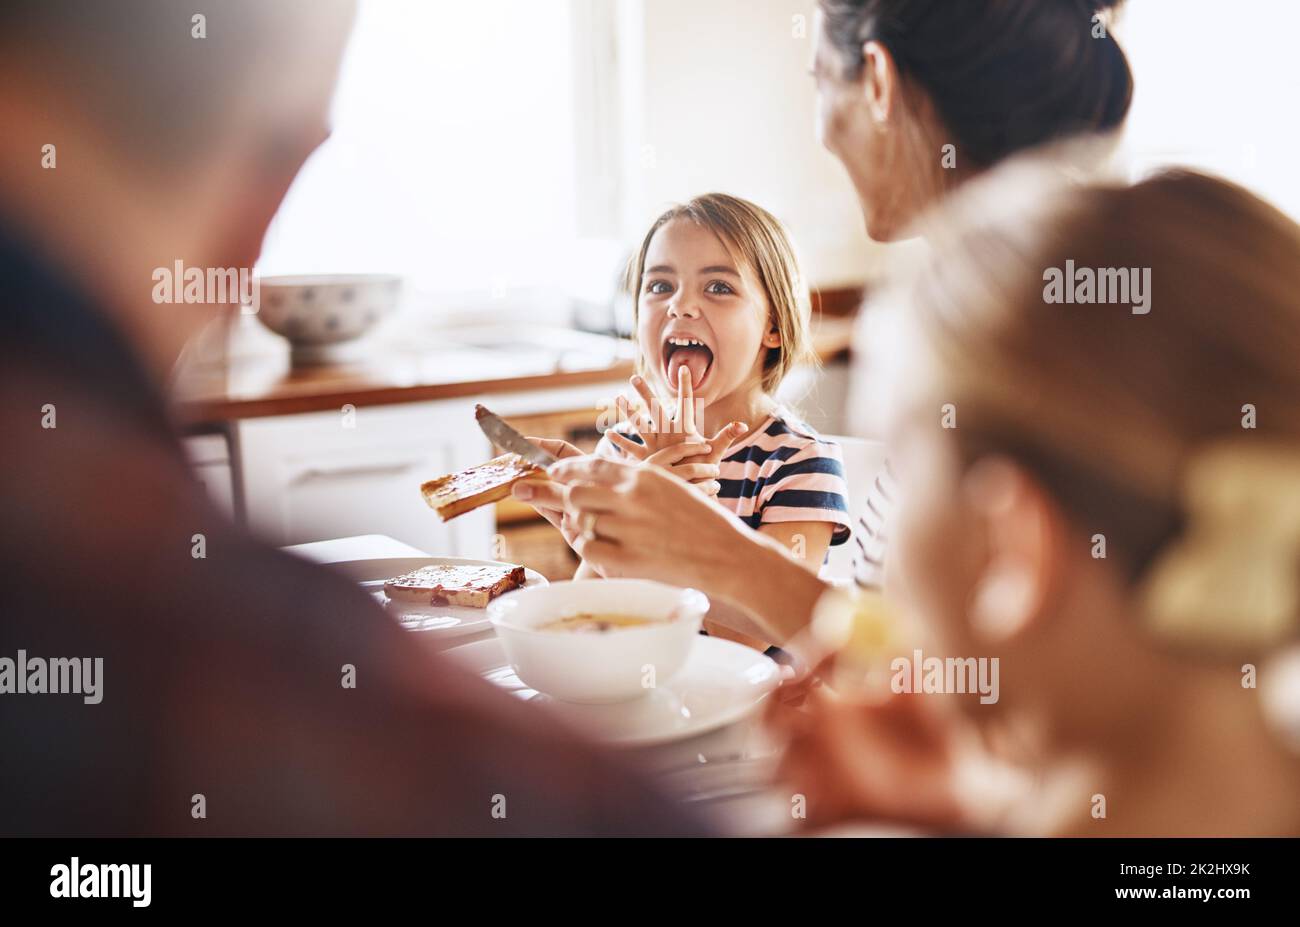 Es leckt gut mit den Fingern. Eine kurze Aufnahme einer Familie, die zusammen frühstücken geht. Stockfoto